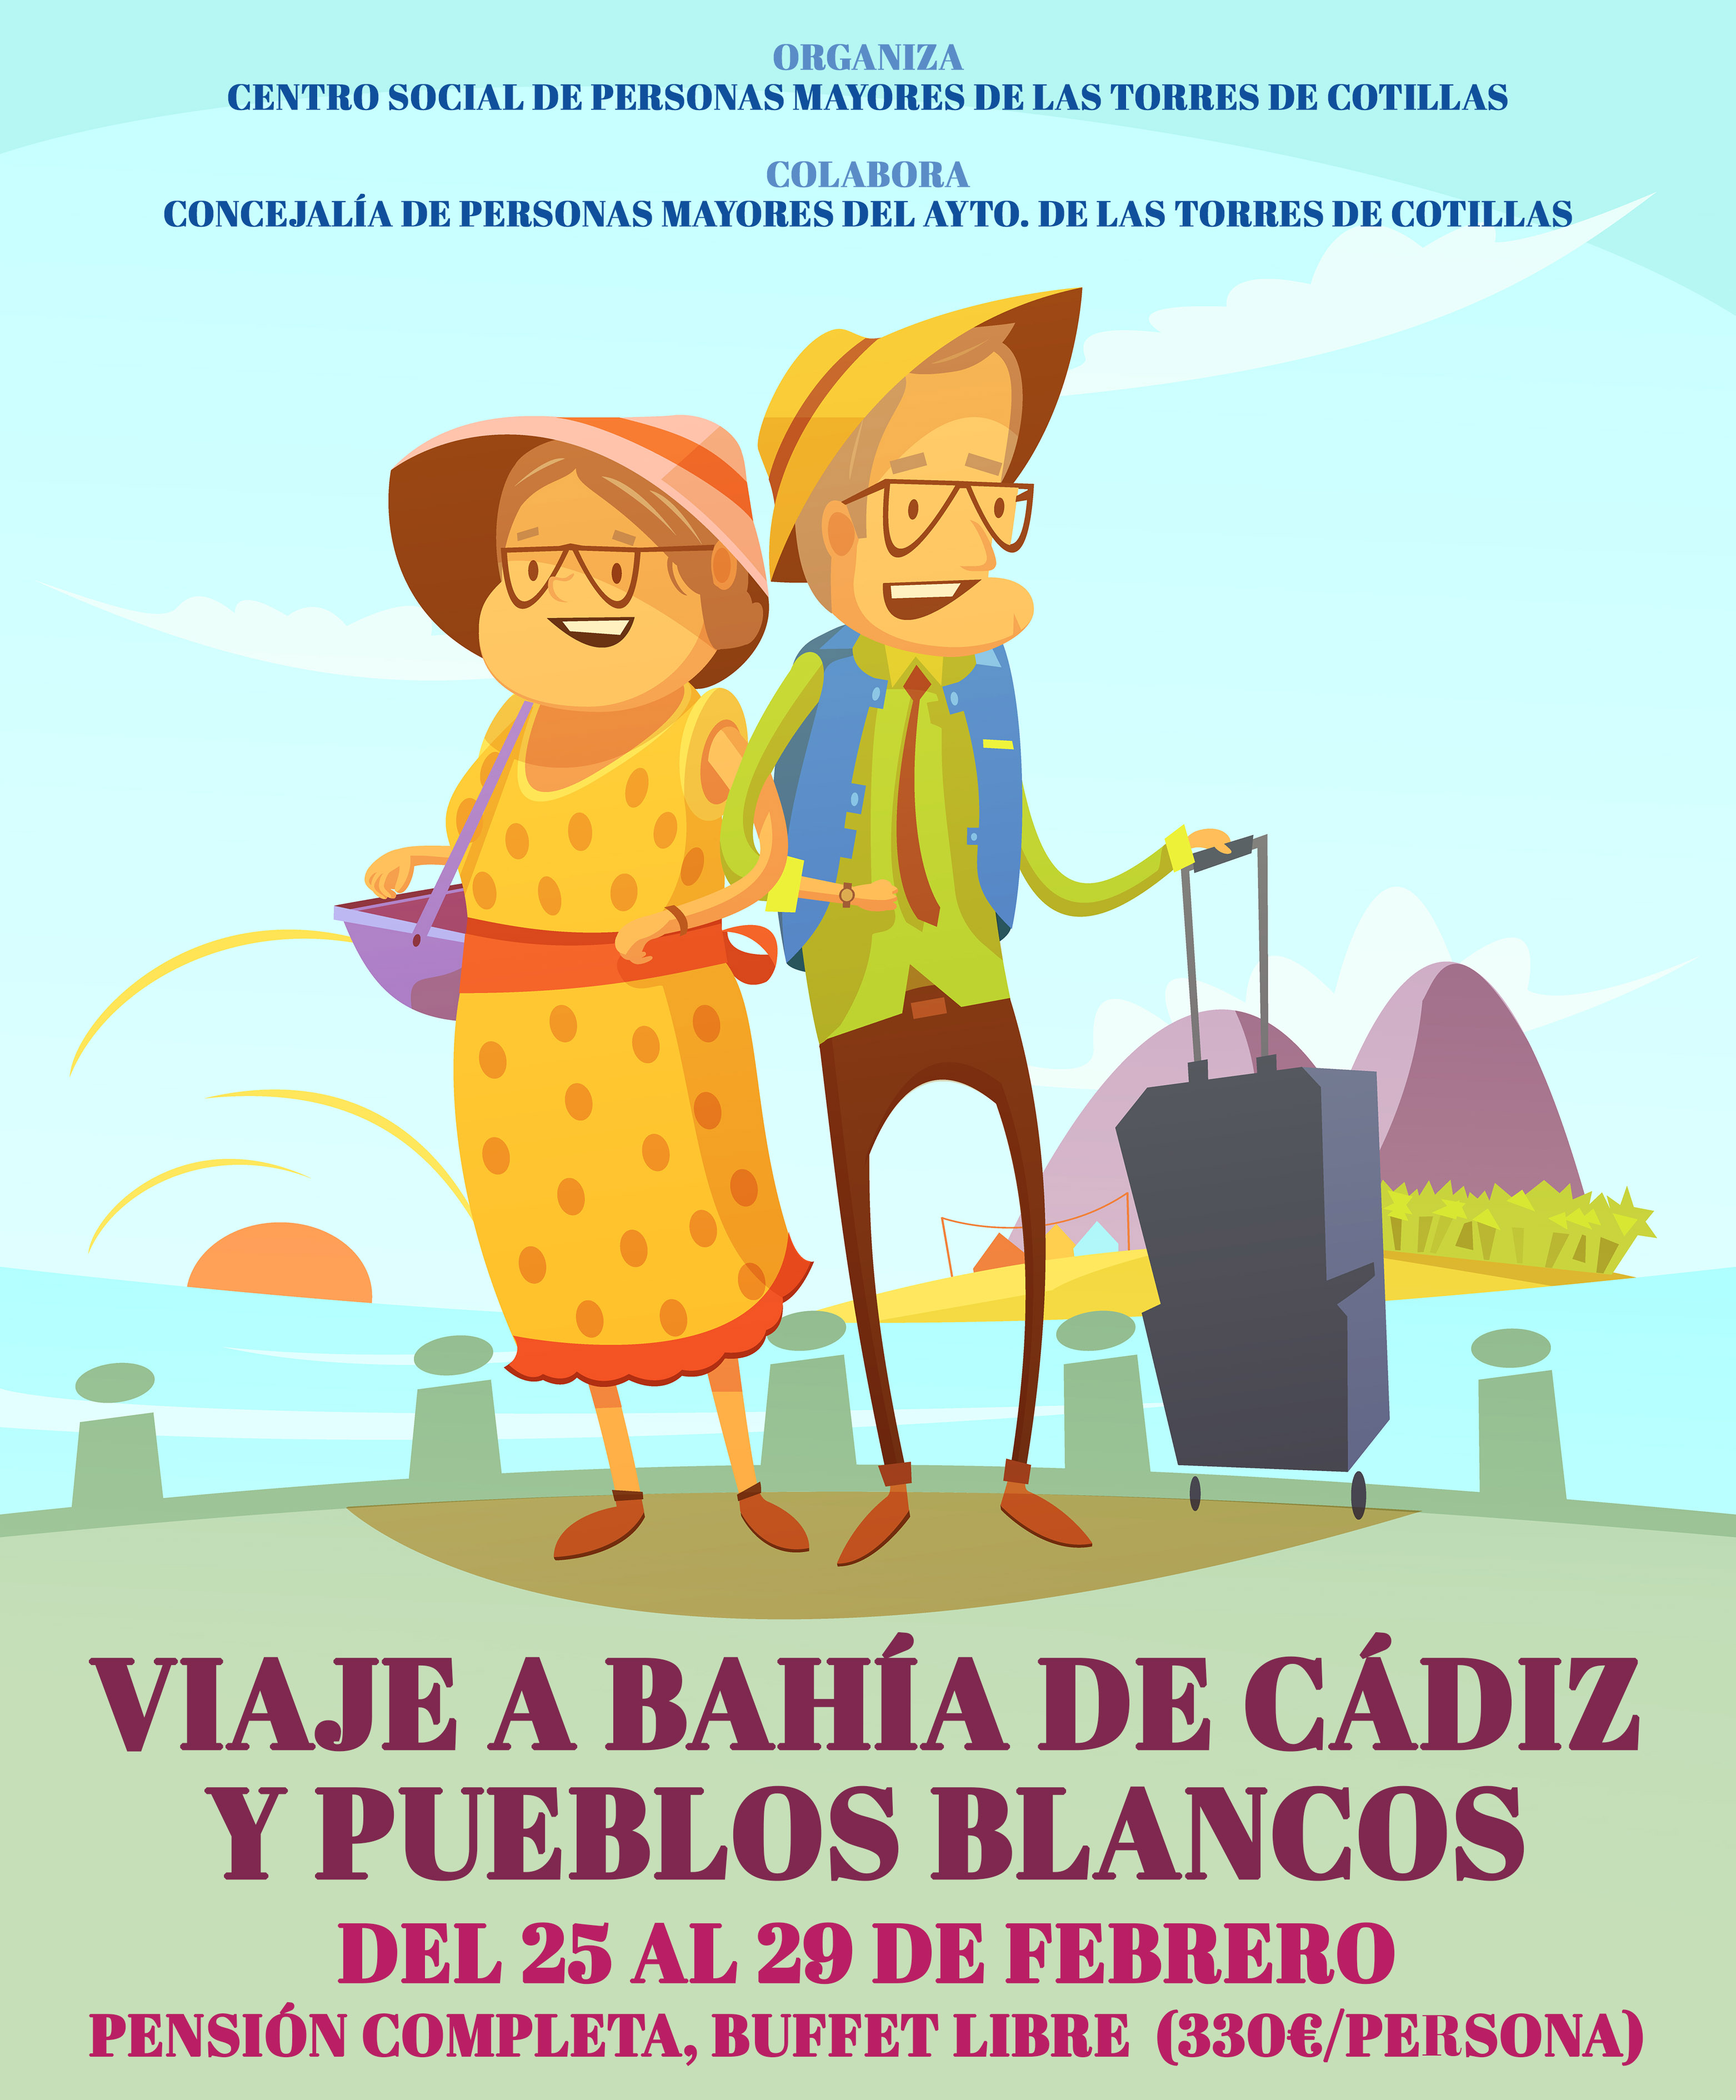 El centro social de personas mayores organiza para febrero un viaje a la bahía de Cádiz